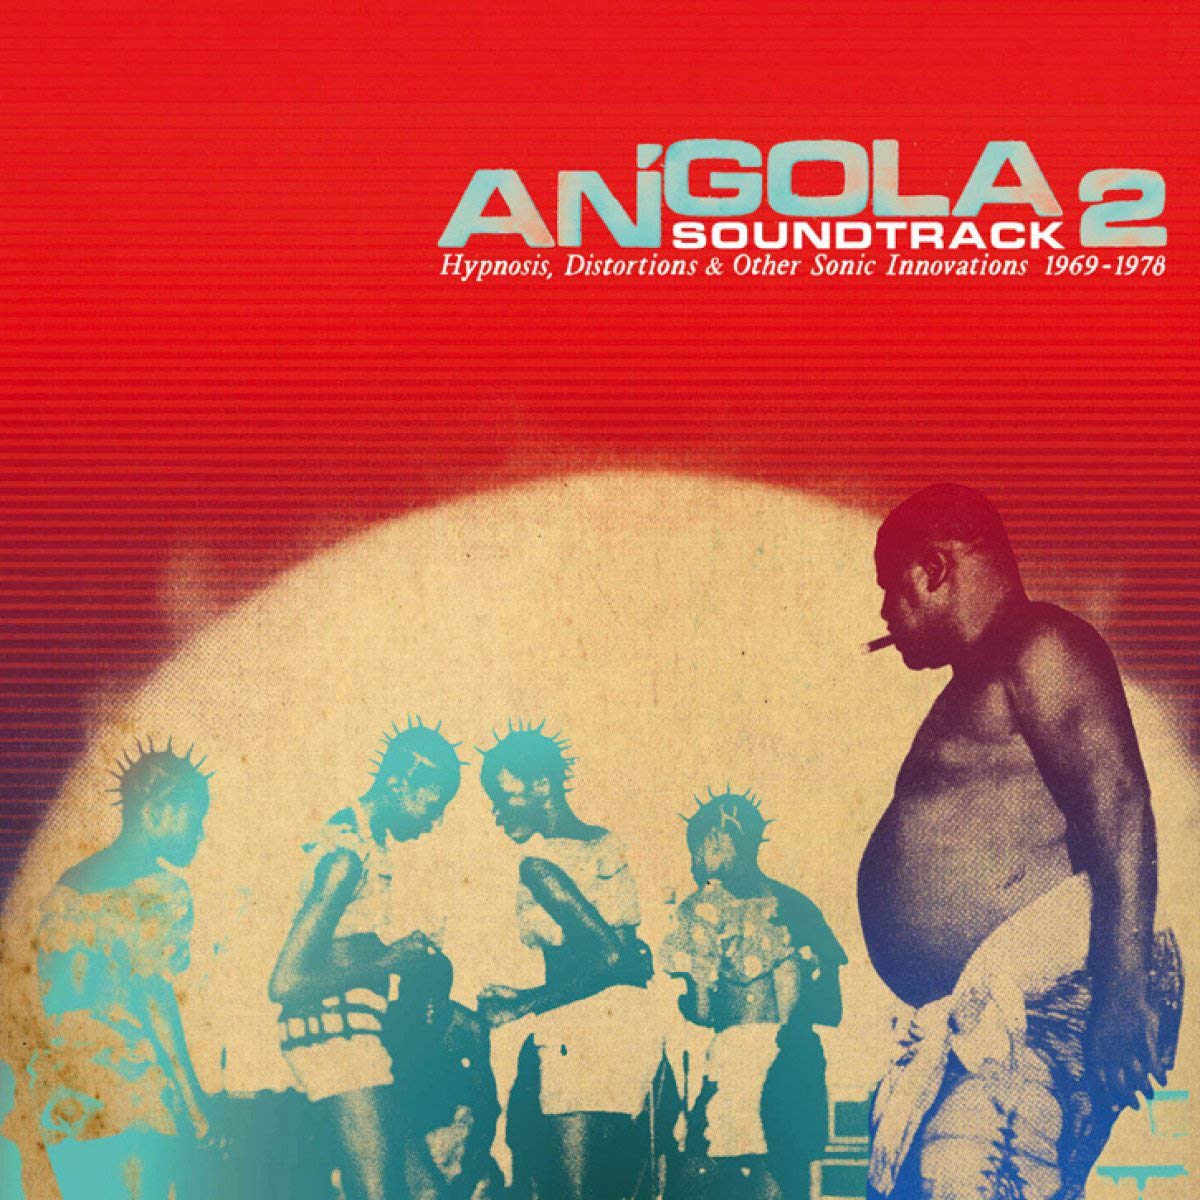 VARIOUS - Angola Soundtrack 2 (2021 Repress) - 2LP - Vinyl